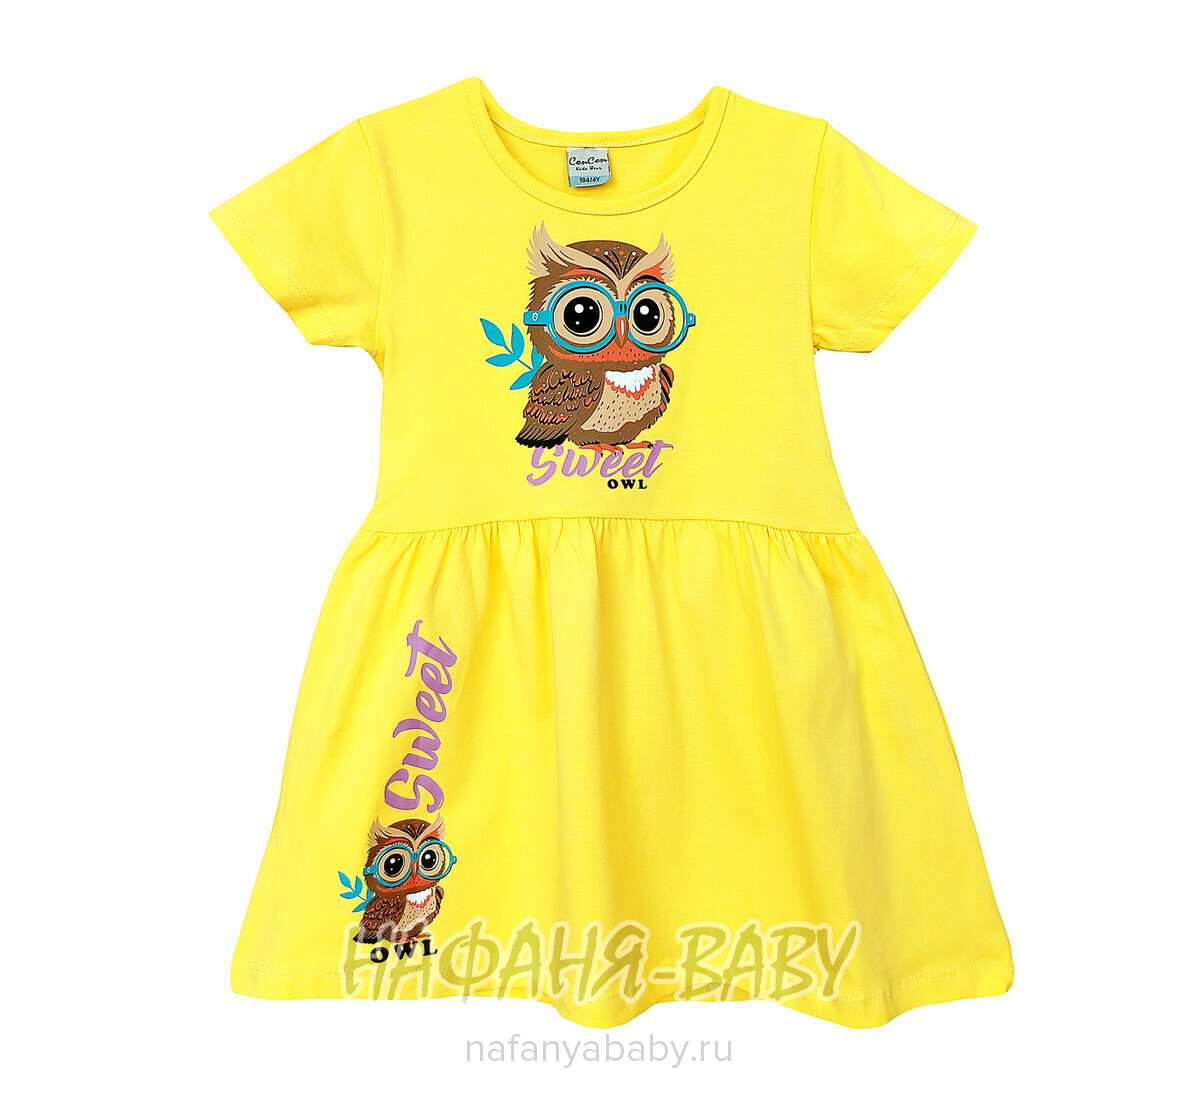 Детское платье Con Con арт. 16308, для девочки 3-6 лет, цвет желтый, оптом Турция